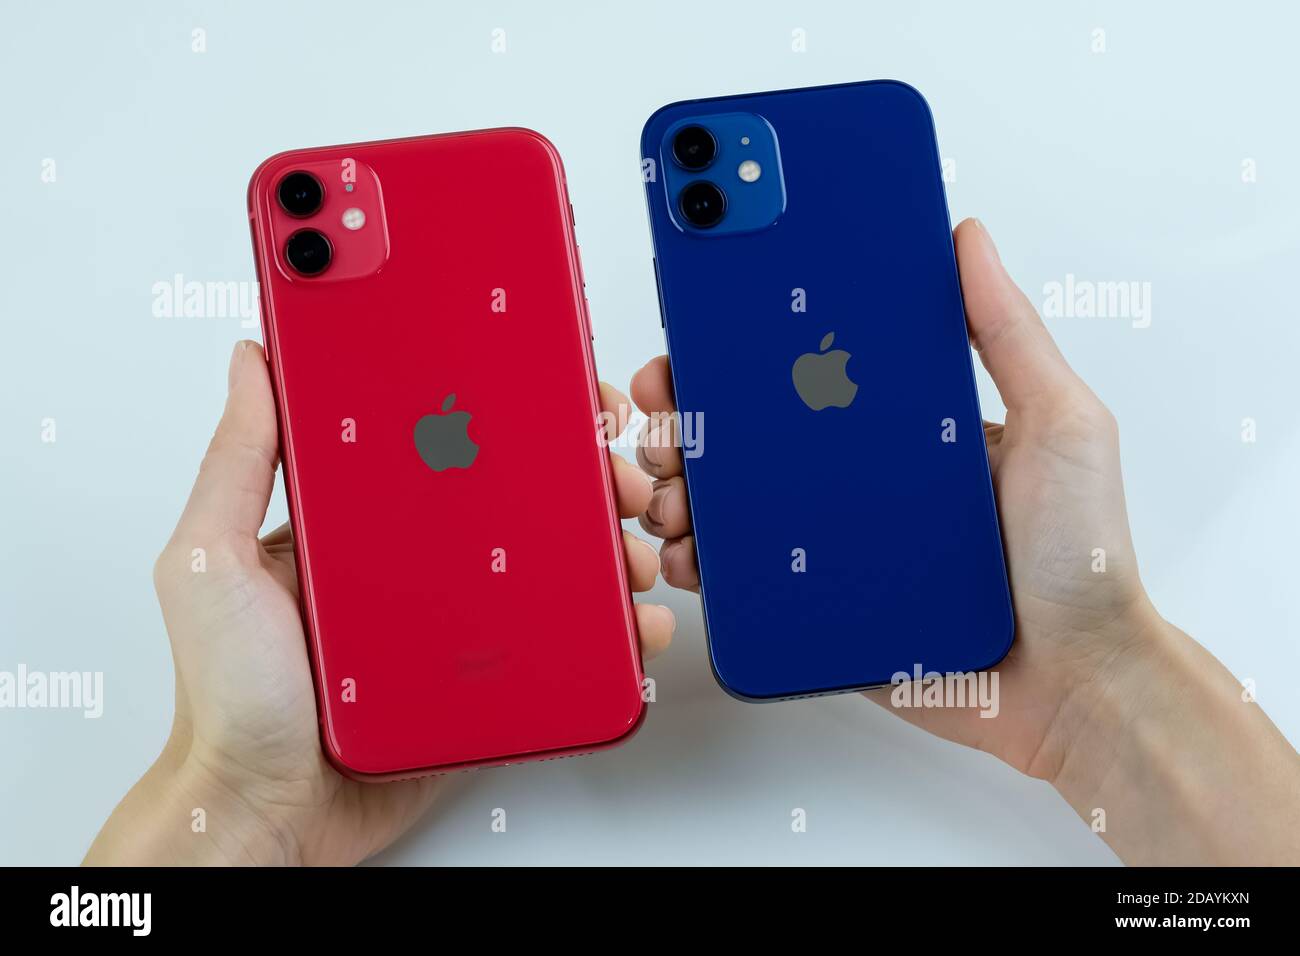 IPhone 12 en bleu et iPhone 11 en rouge côte à côte Photo Stock - Alamy